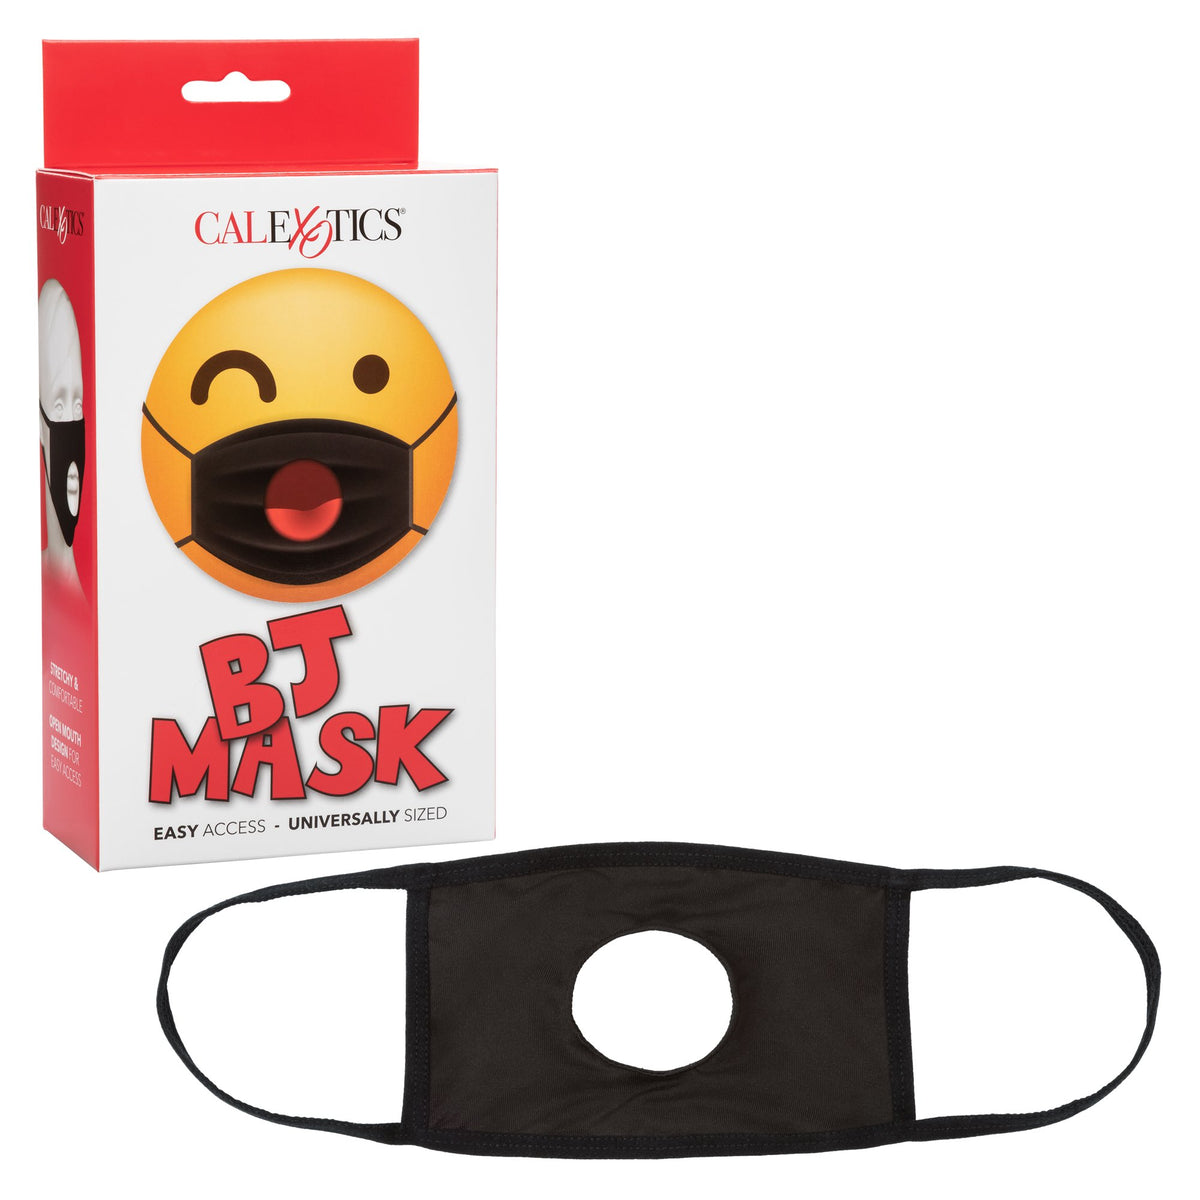 CalExotics BJ 69 Easy Mask - Black